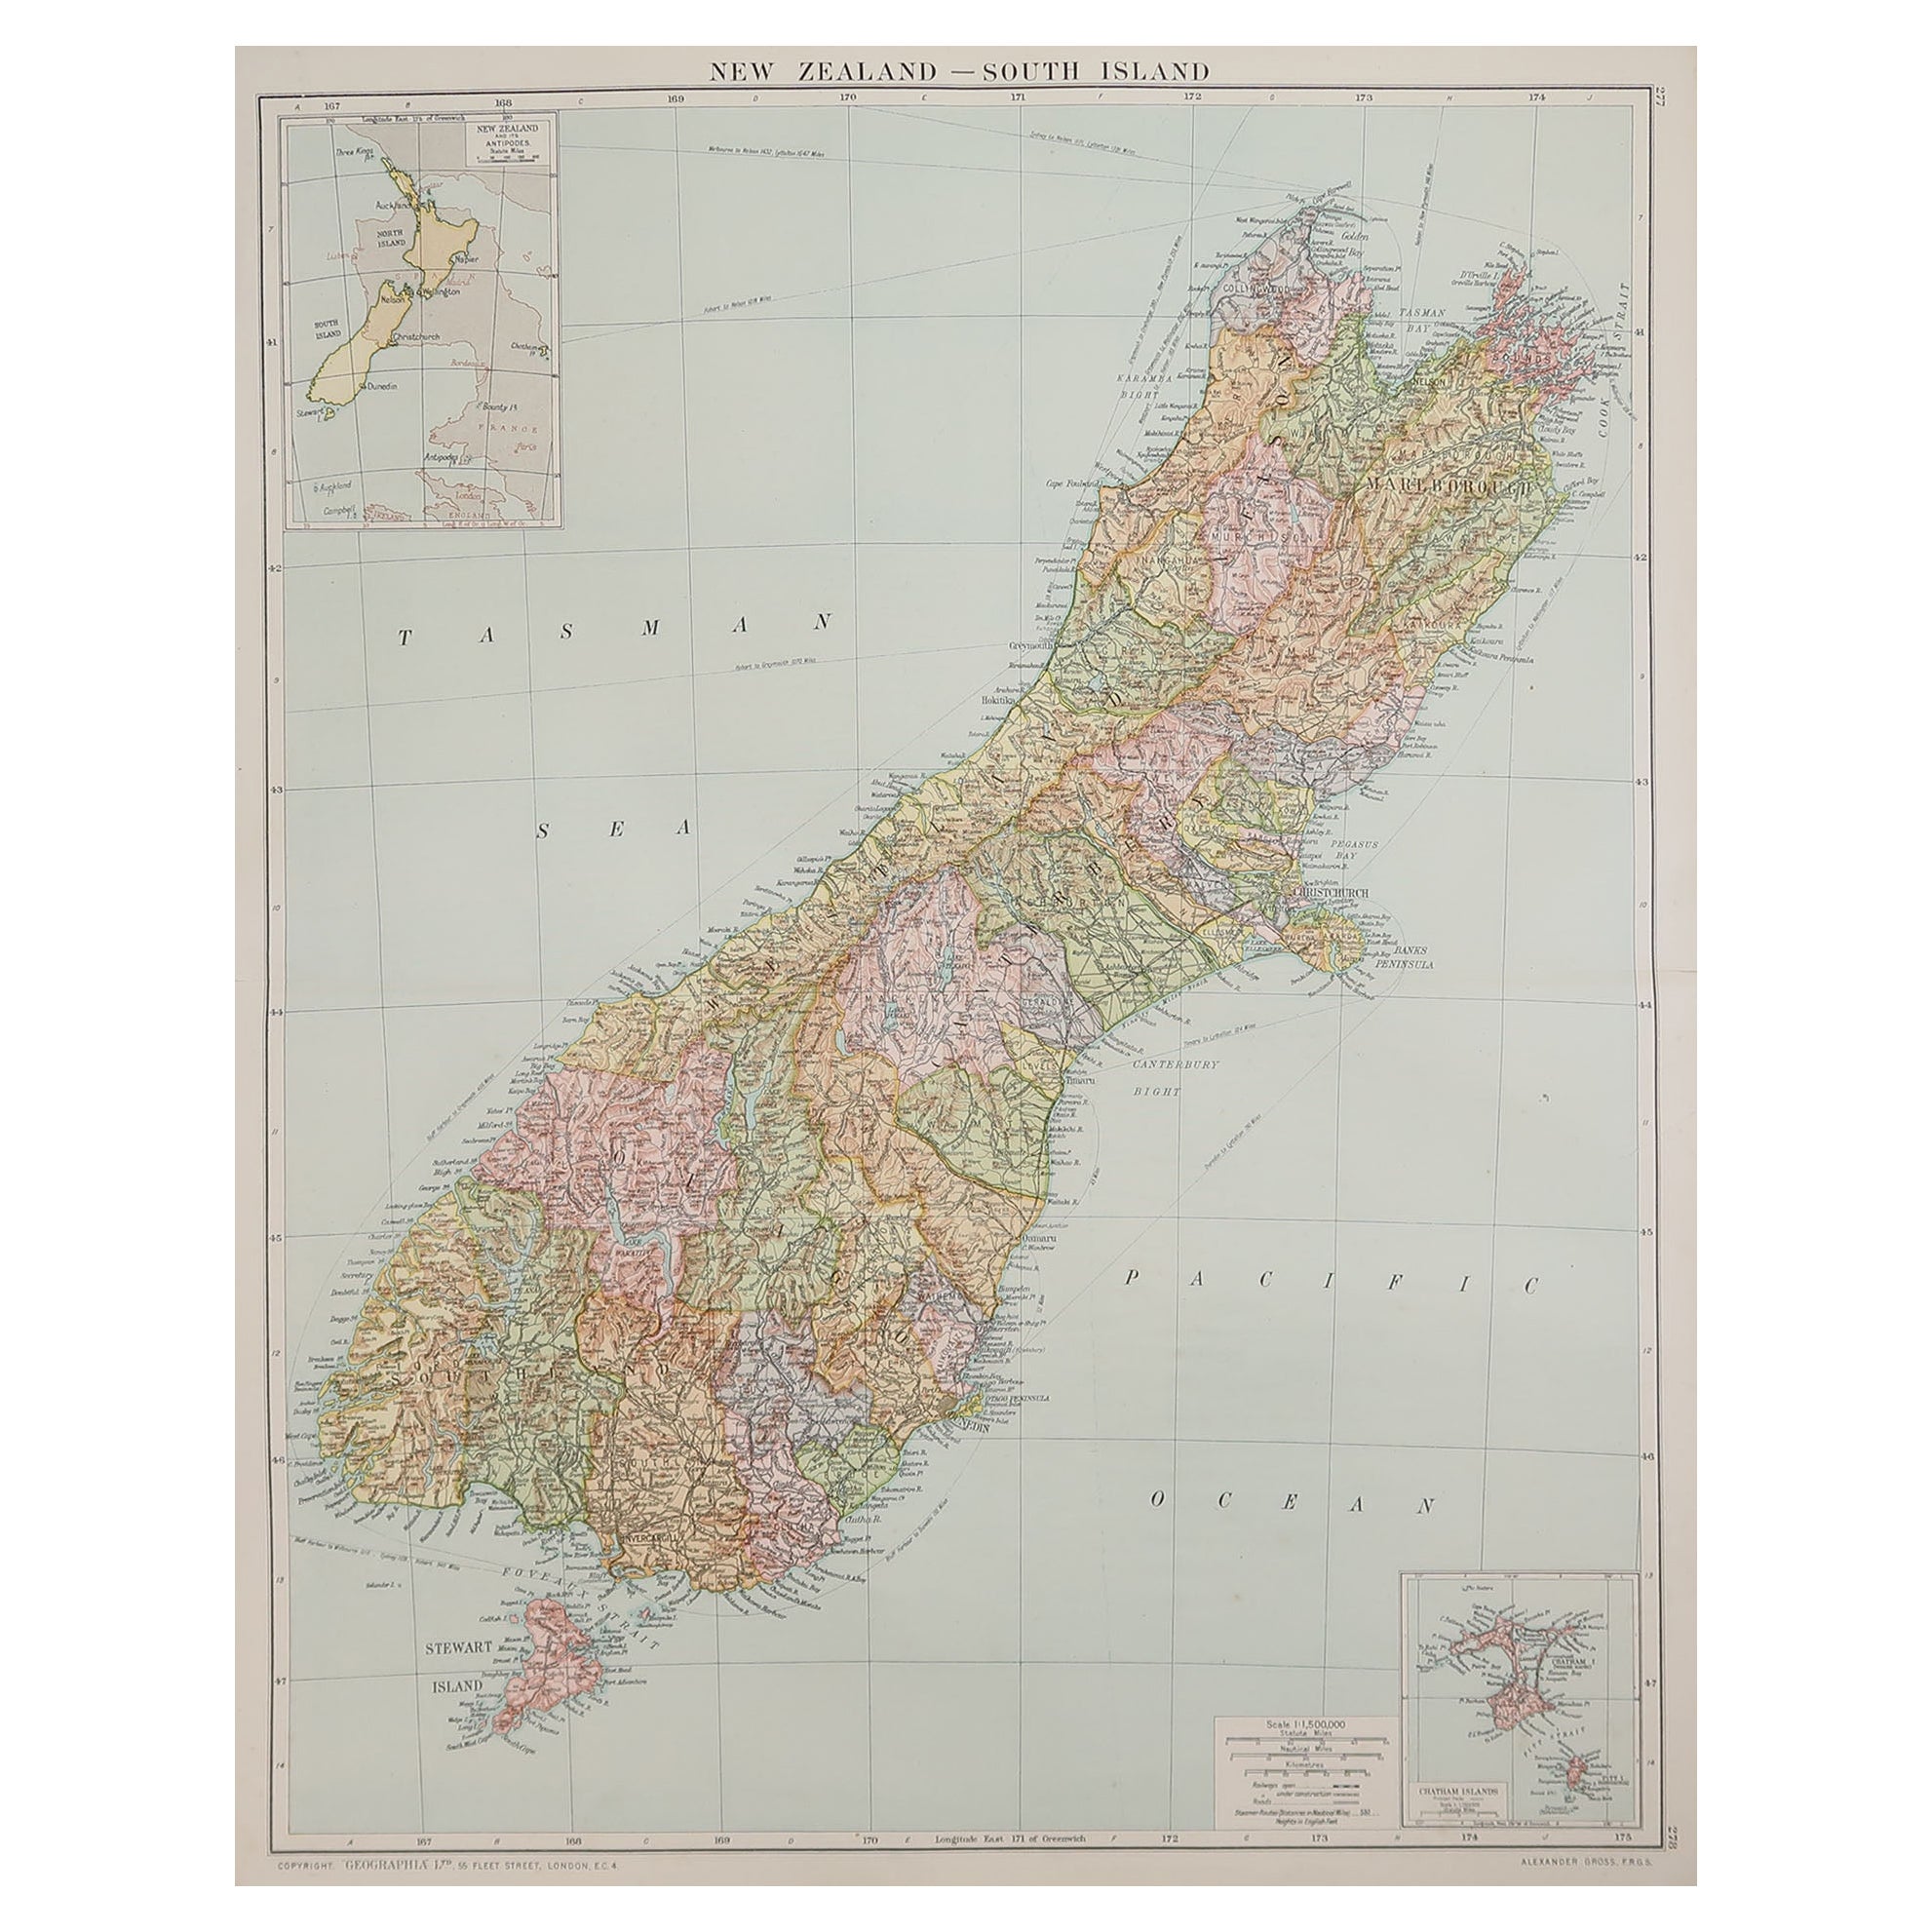 Große Original-Vintage-Karte von Neuseeland, Südinsel, um 1920